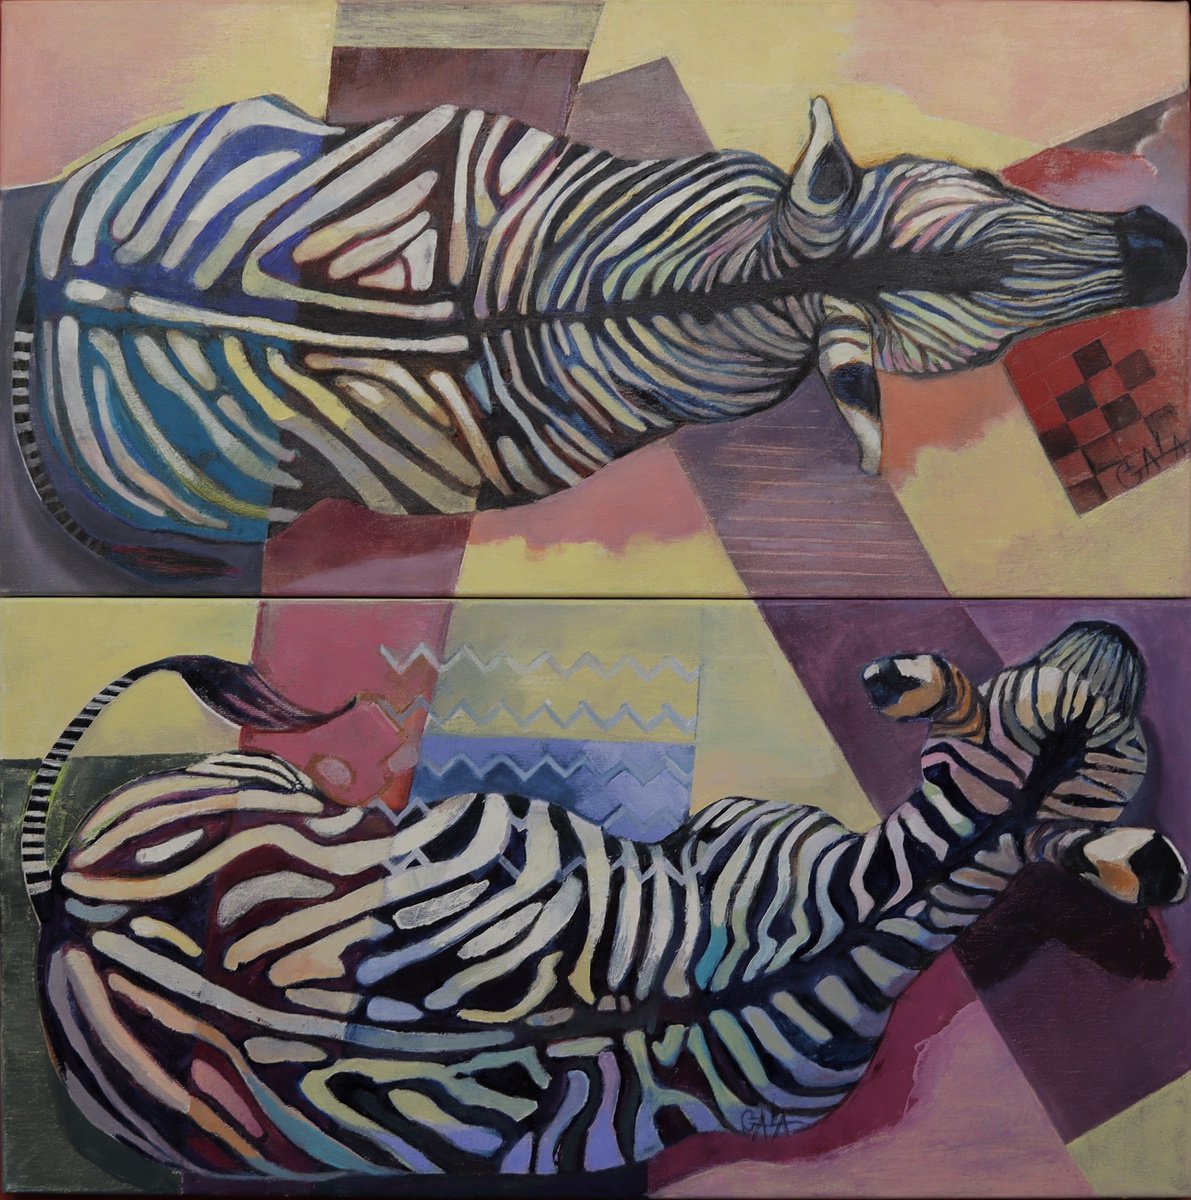 Zebras by Galya Koleva